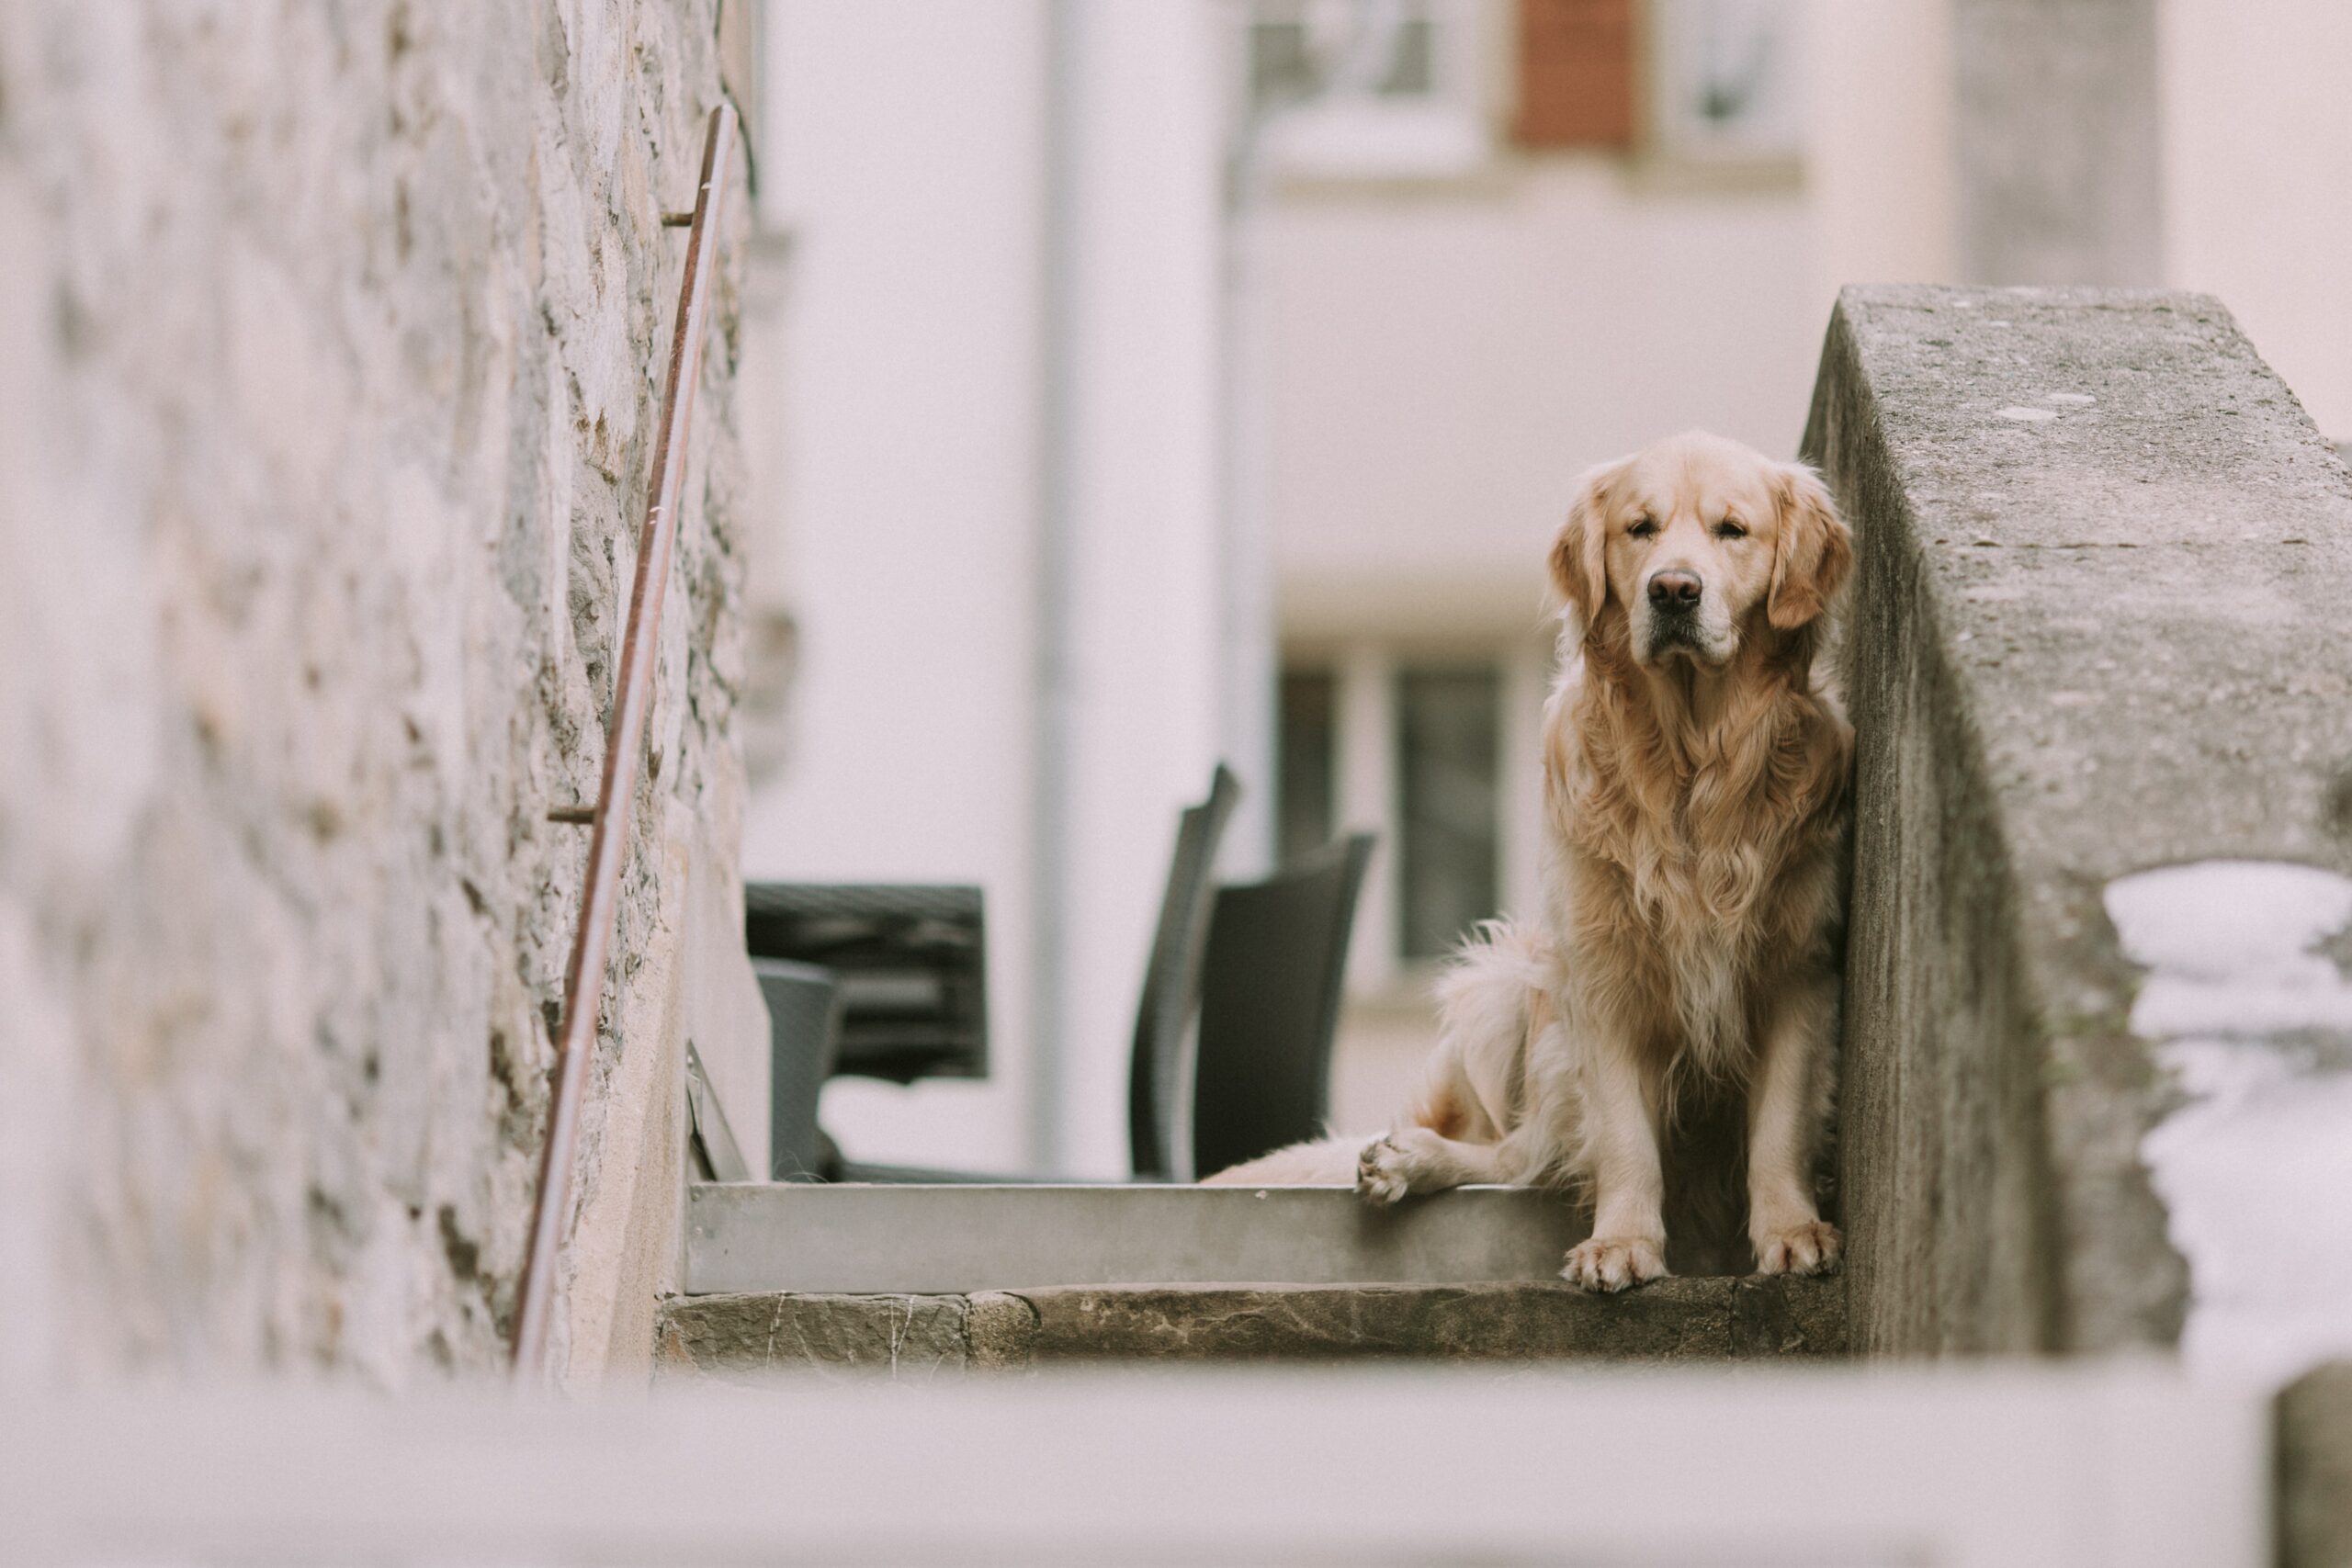 Mein Hund hat Angst vor Treppen – Was kann ich tun?